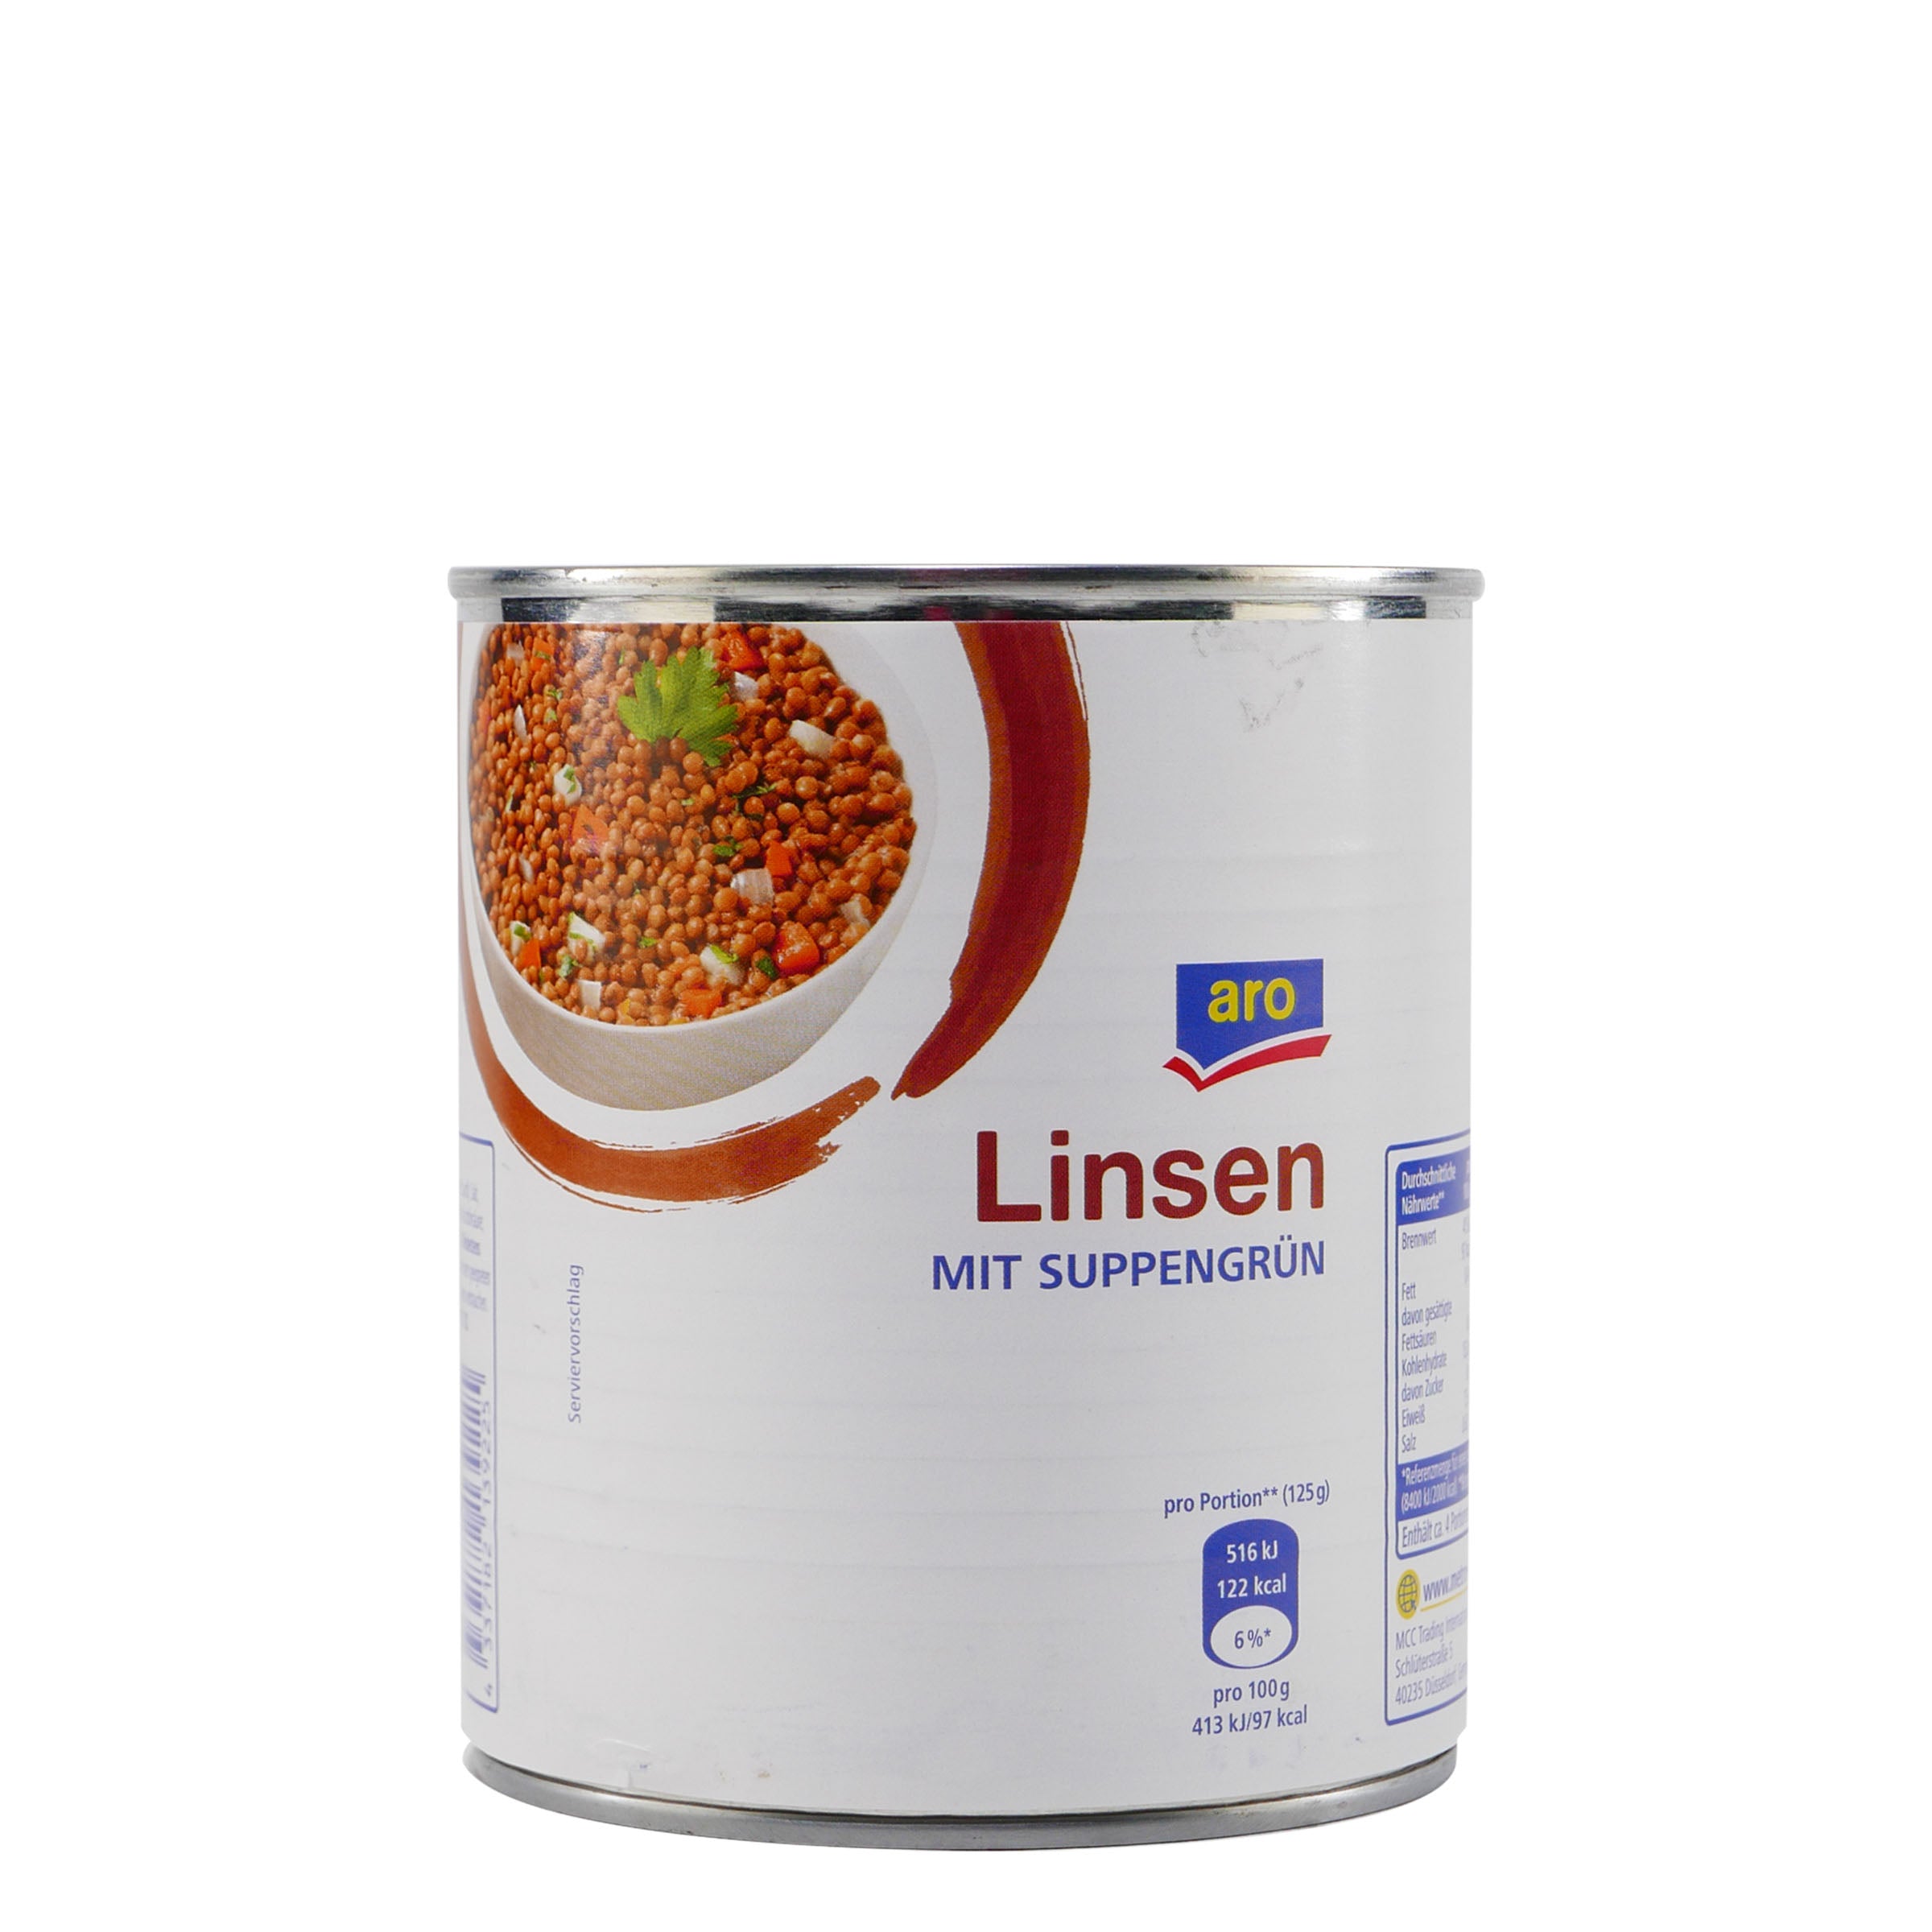 aro Linsen mit Suppengrün (12 x 800g)